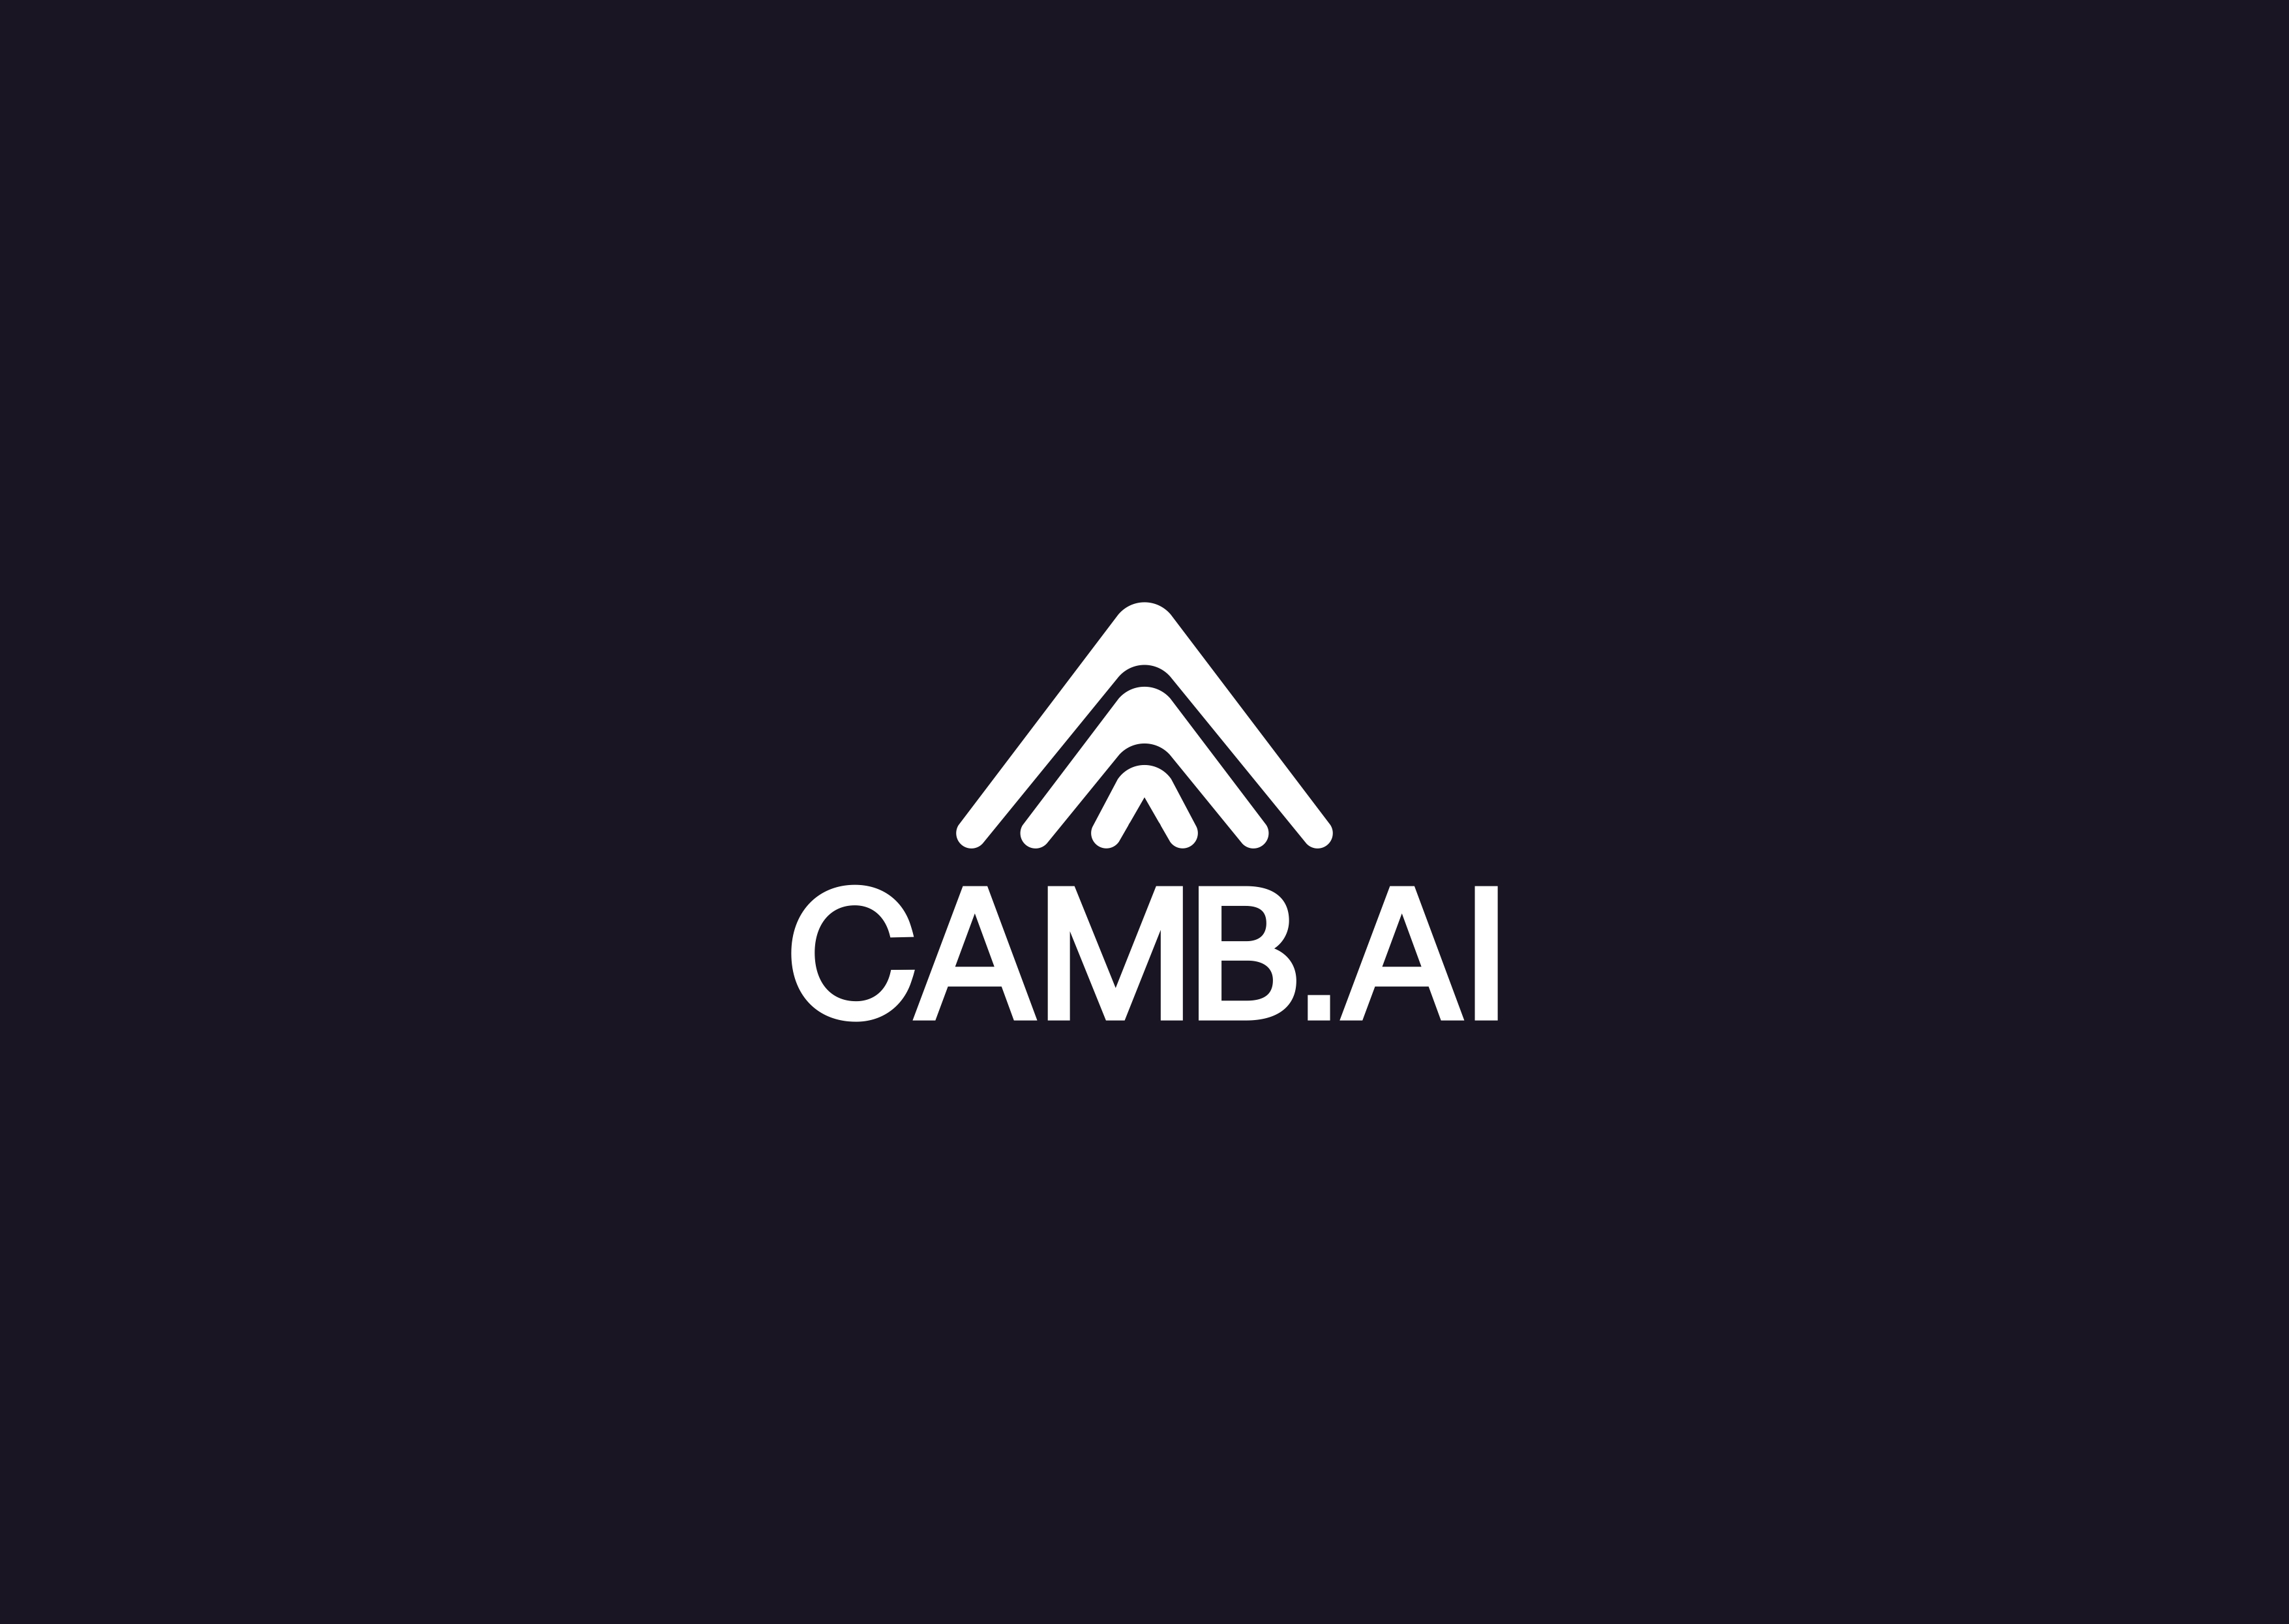 CAMB.AI